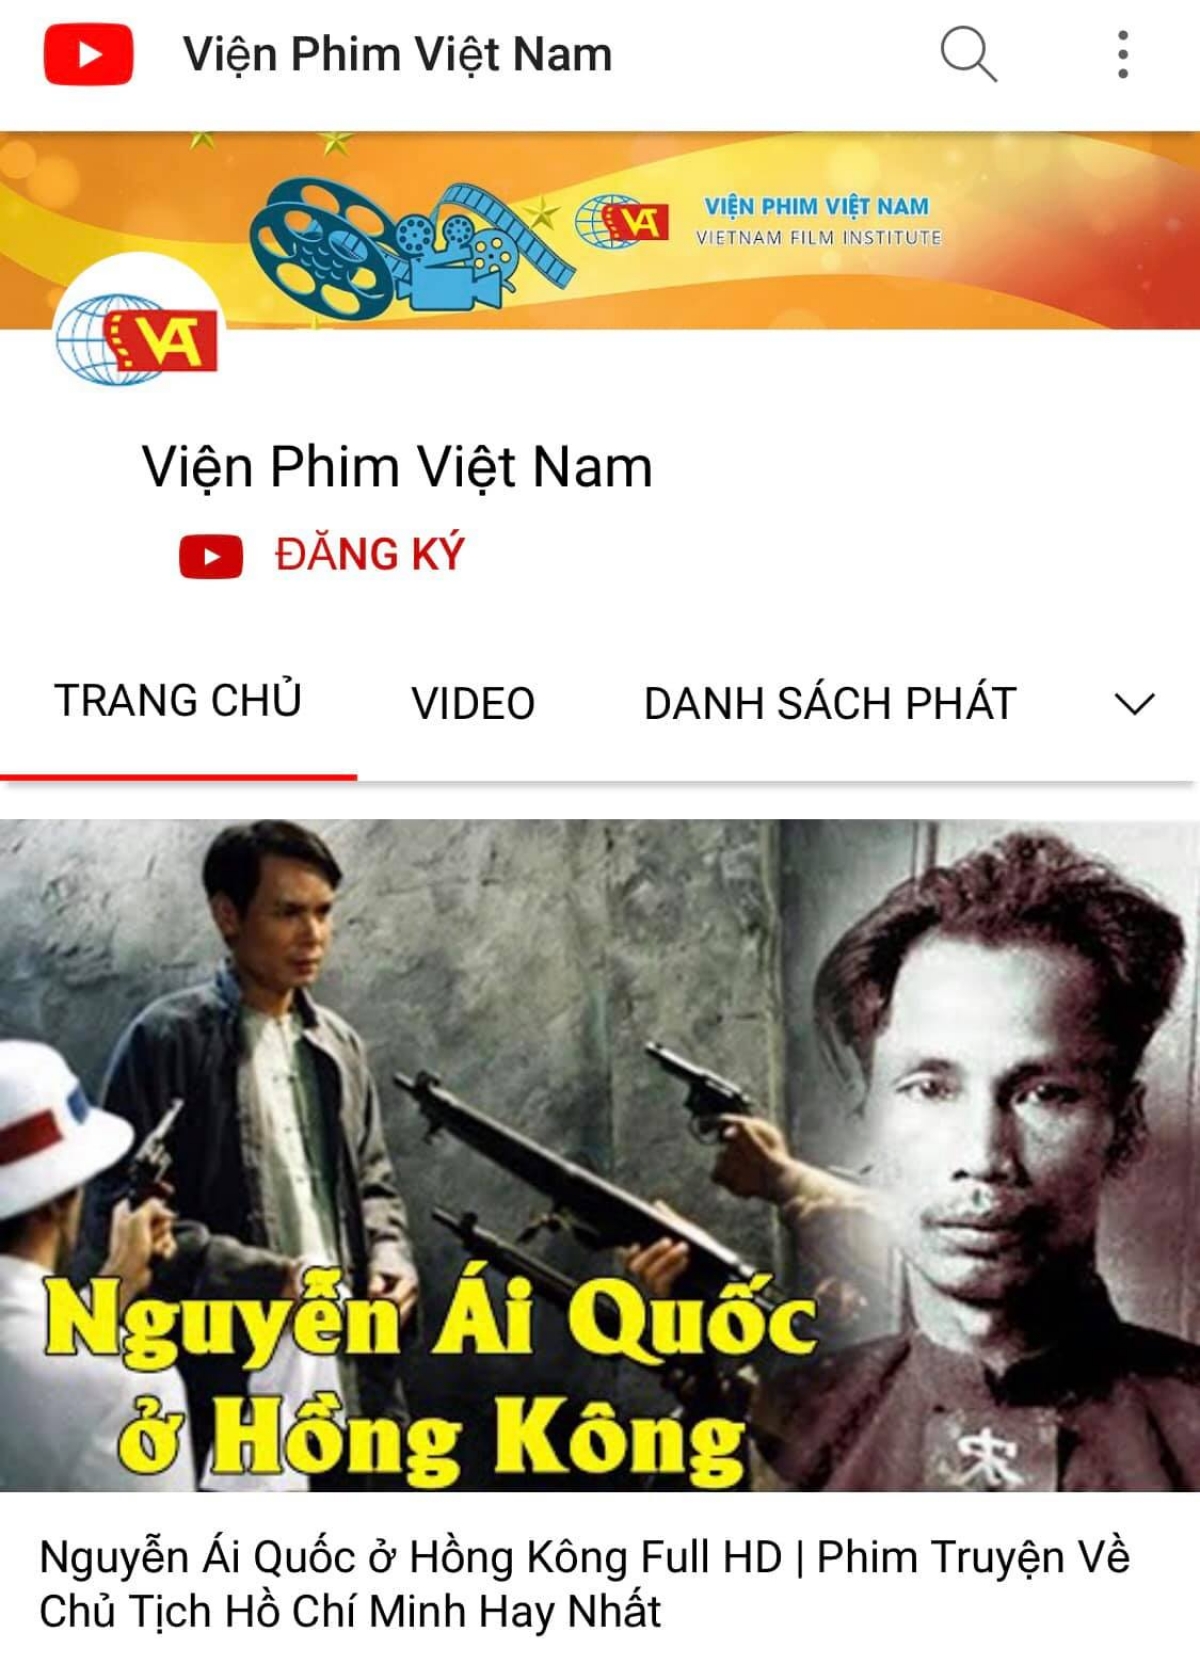 Viện Phim Việt Nam trên Youtube là nơi tuyệt vời để các bạn trẻ truy cập và khám phá các bộ phim đặc sắc của đất nước Việt Nam. Với khối lượng phim đa dạng, chất lượng cao và miễn phí, Viện Phim Việt Nam trên Youtube là lựa chọn hàng đầu của các bạn yêu phim. Hãy truy cập vào hình ảnh liên quan để khám phá ngay!